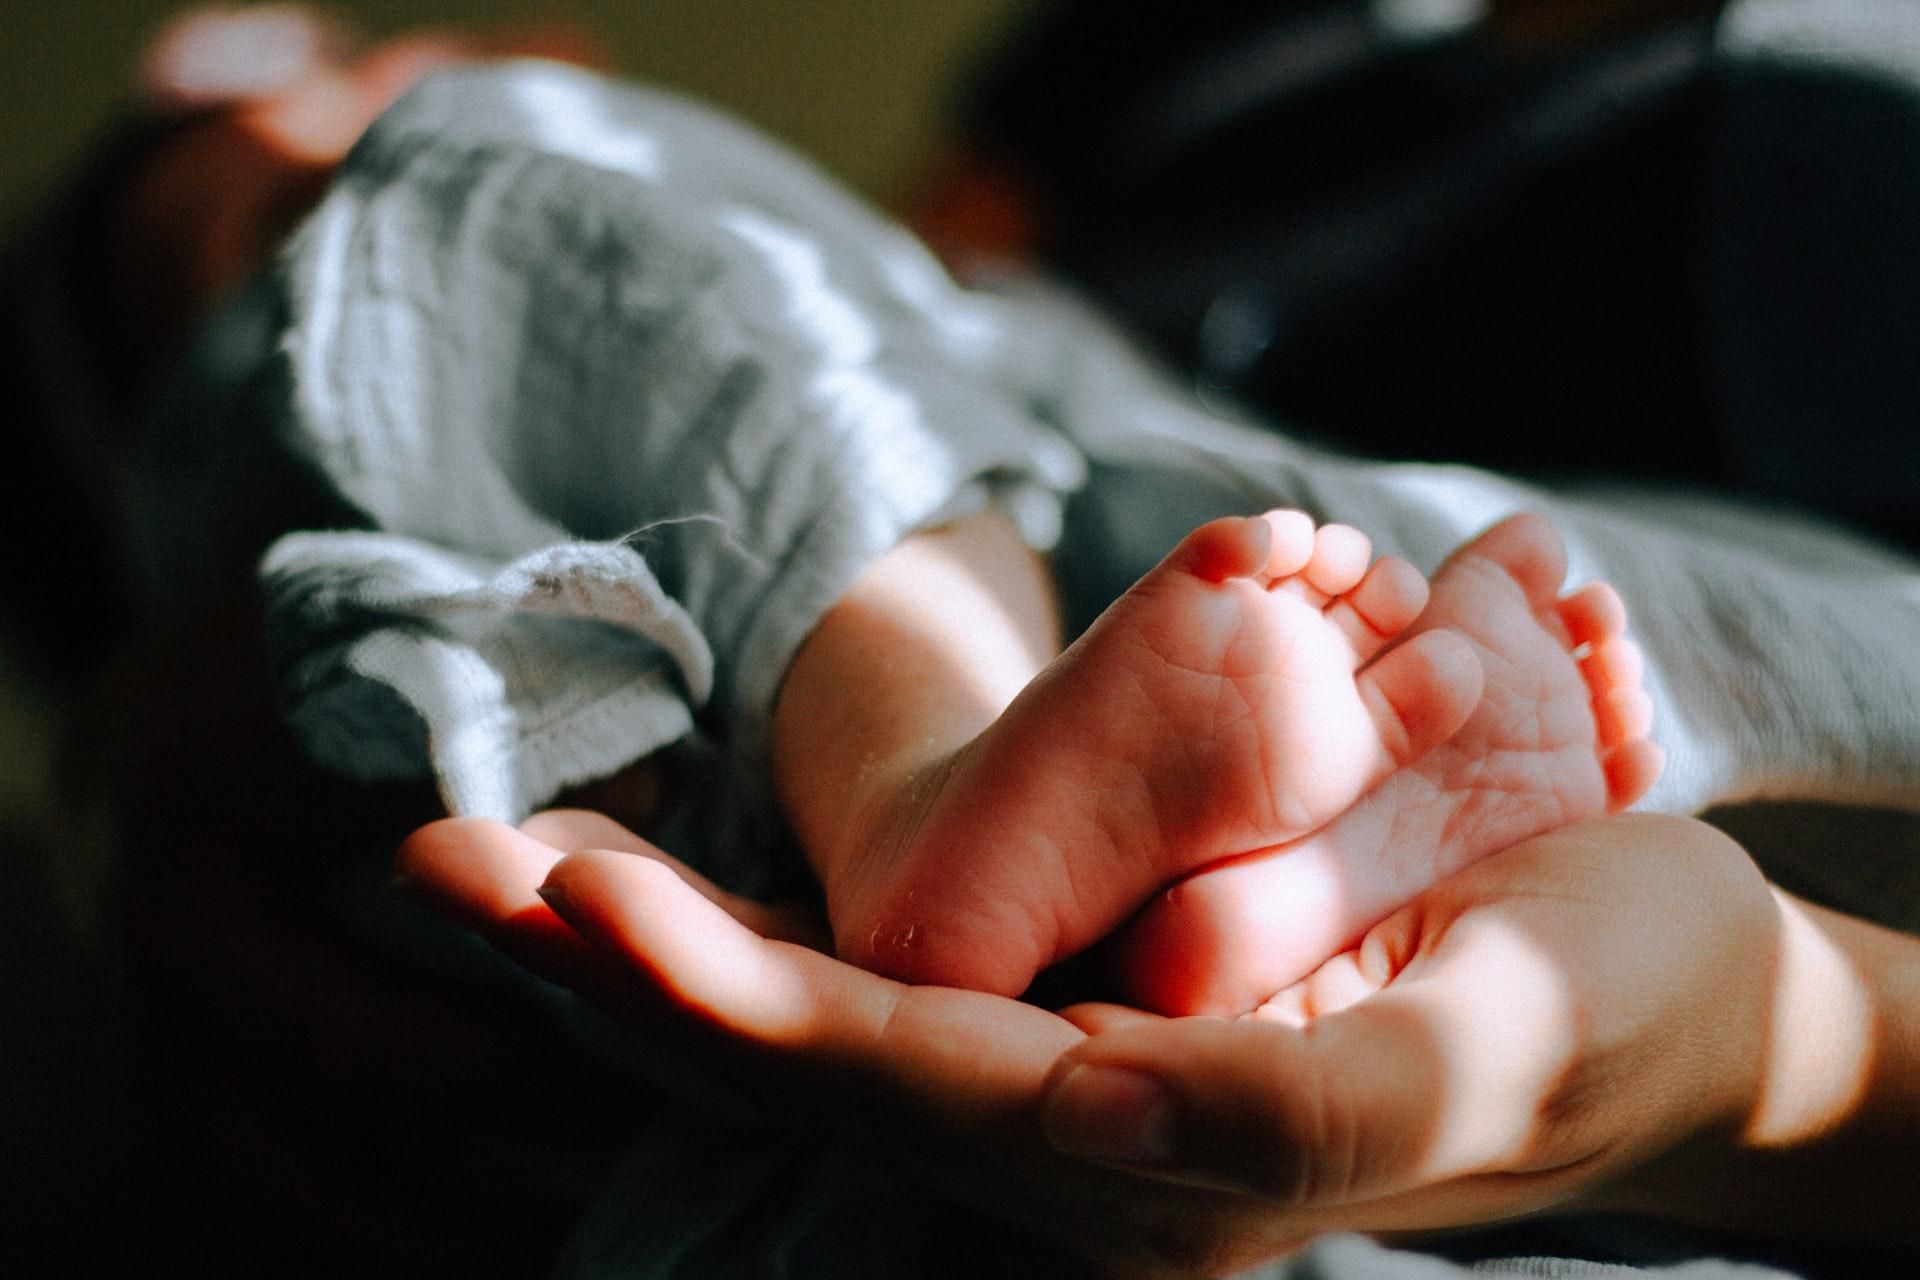 Ніхто не знав про вагітність: на Рівненщині неповнолітня народила дитину біля будинку - Новини Здоров’я